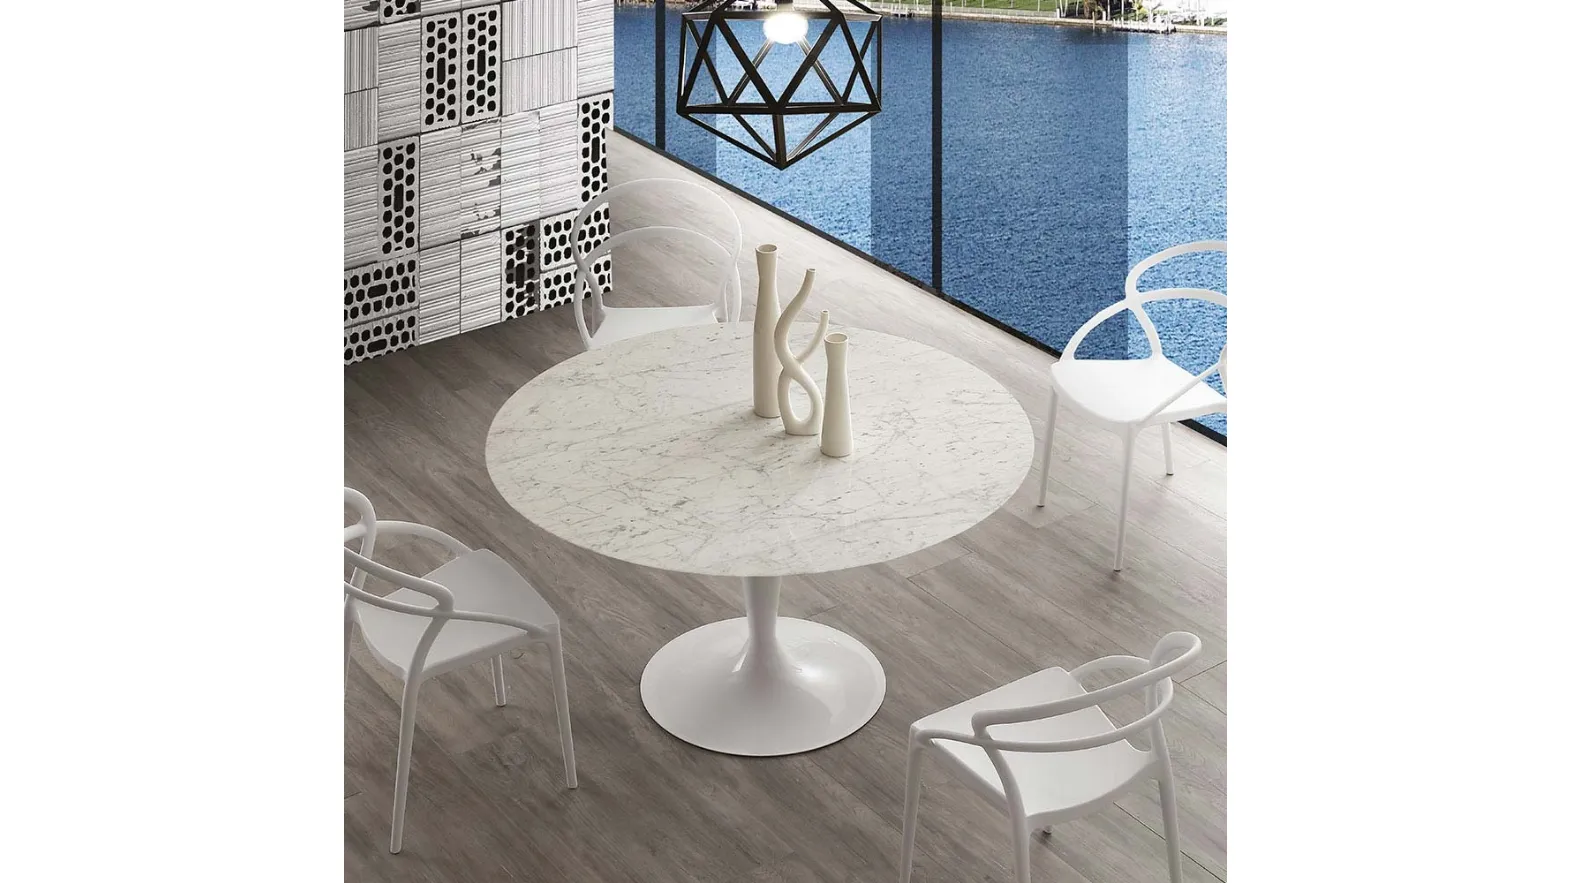 Tavolo rotondo Island Marble con top in marmo bianco di Carrara e base in acciaio verniciato bianco di La Seggiola